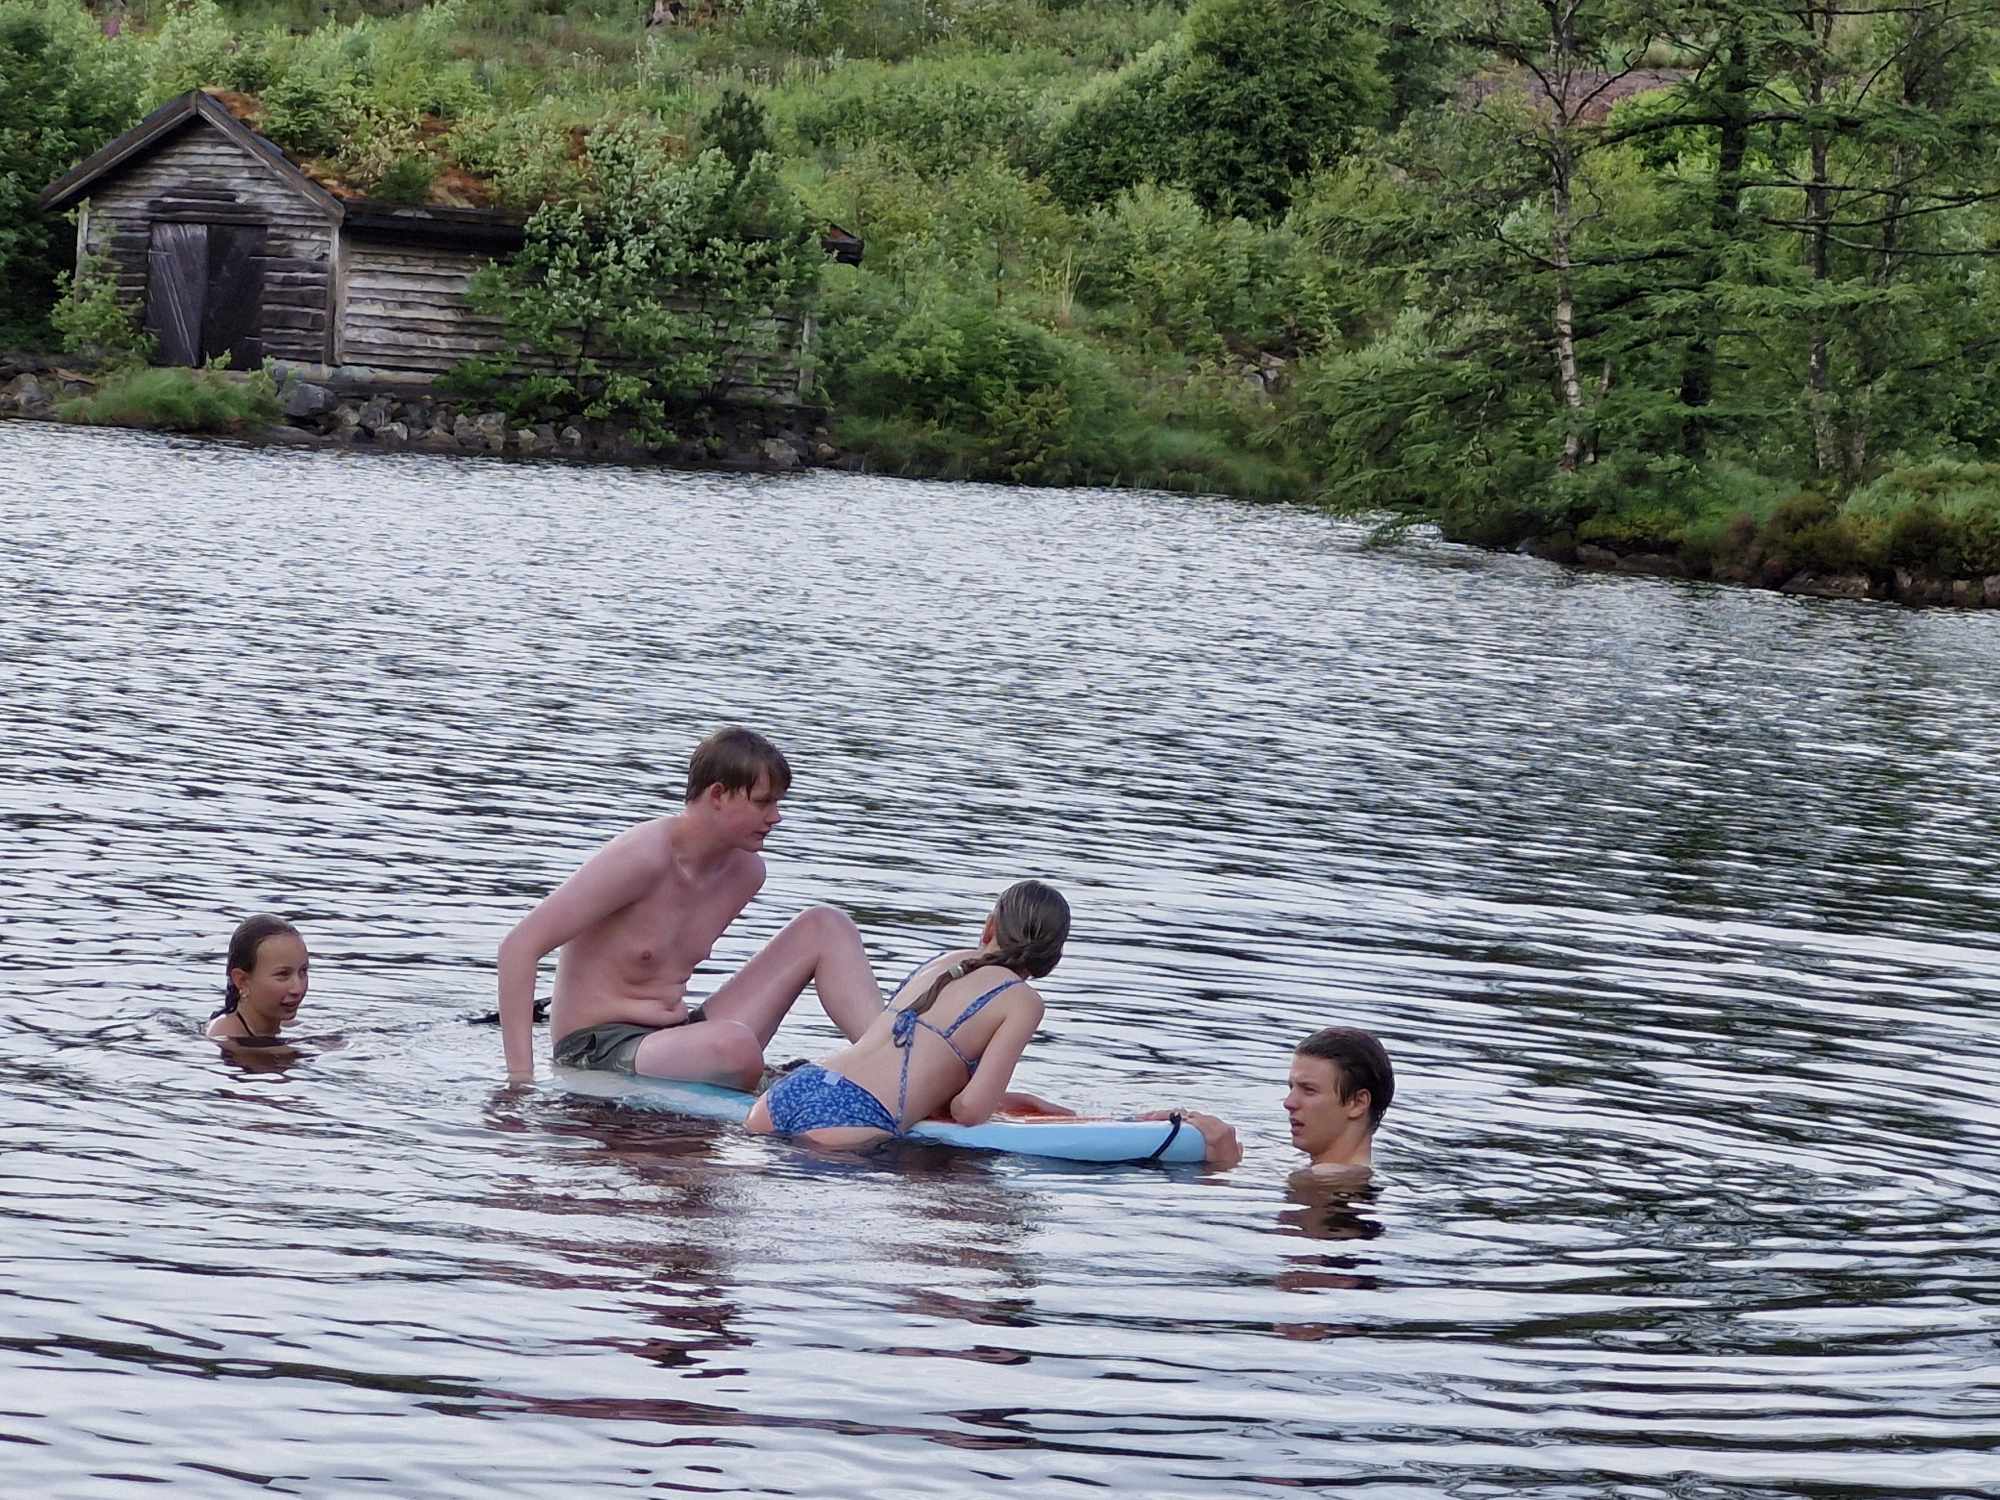 Fire ungdommar badar i vatnet, to av dei lenar seg/sit på eit brett.